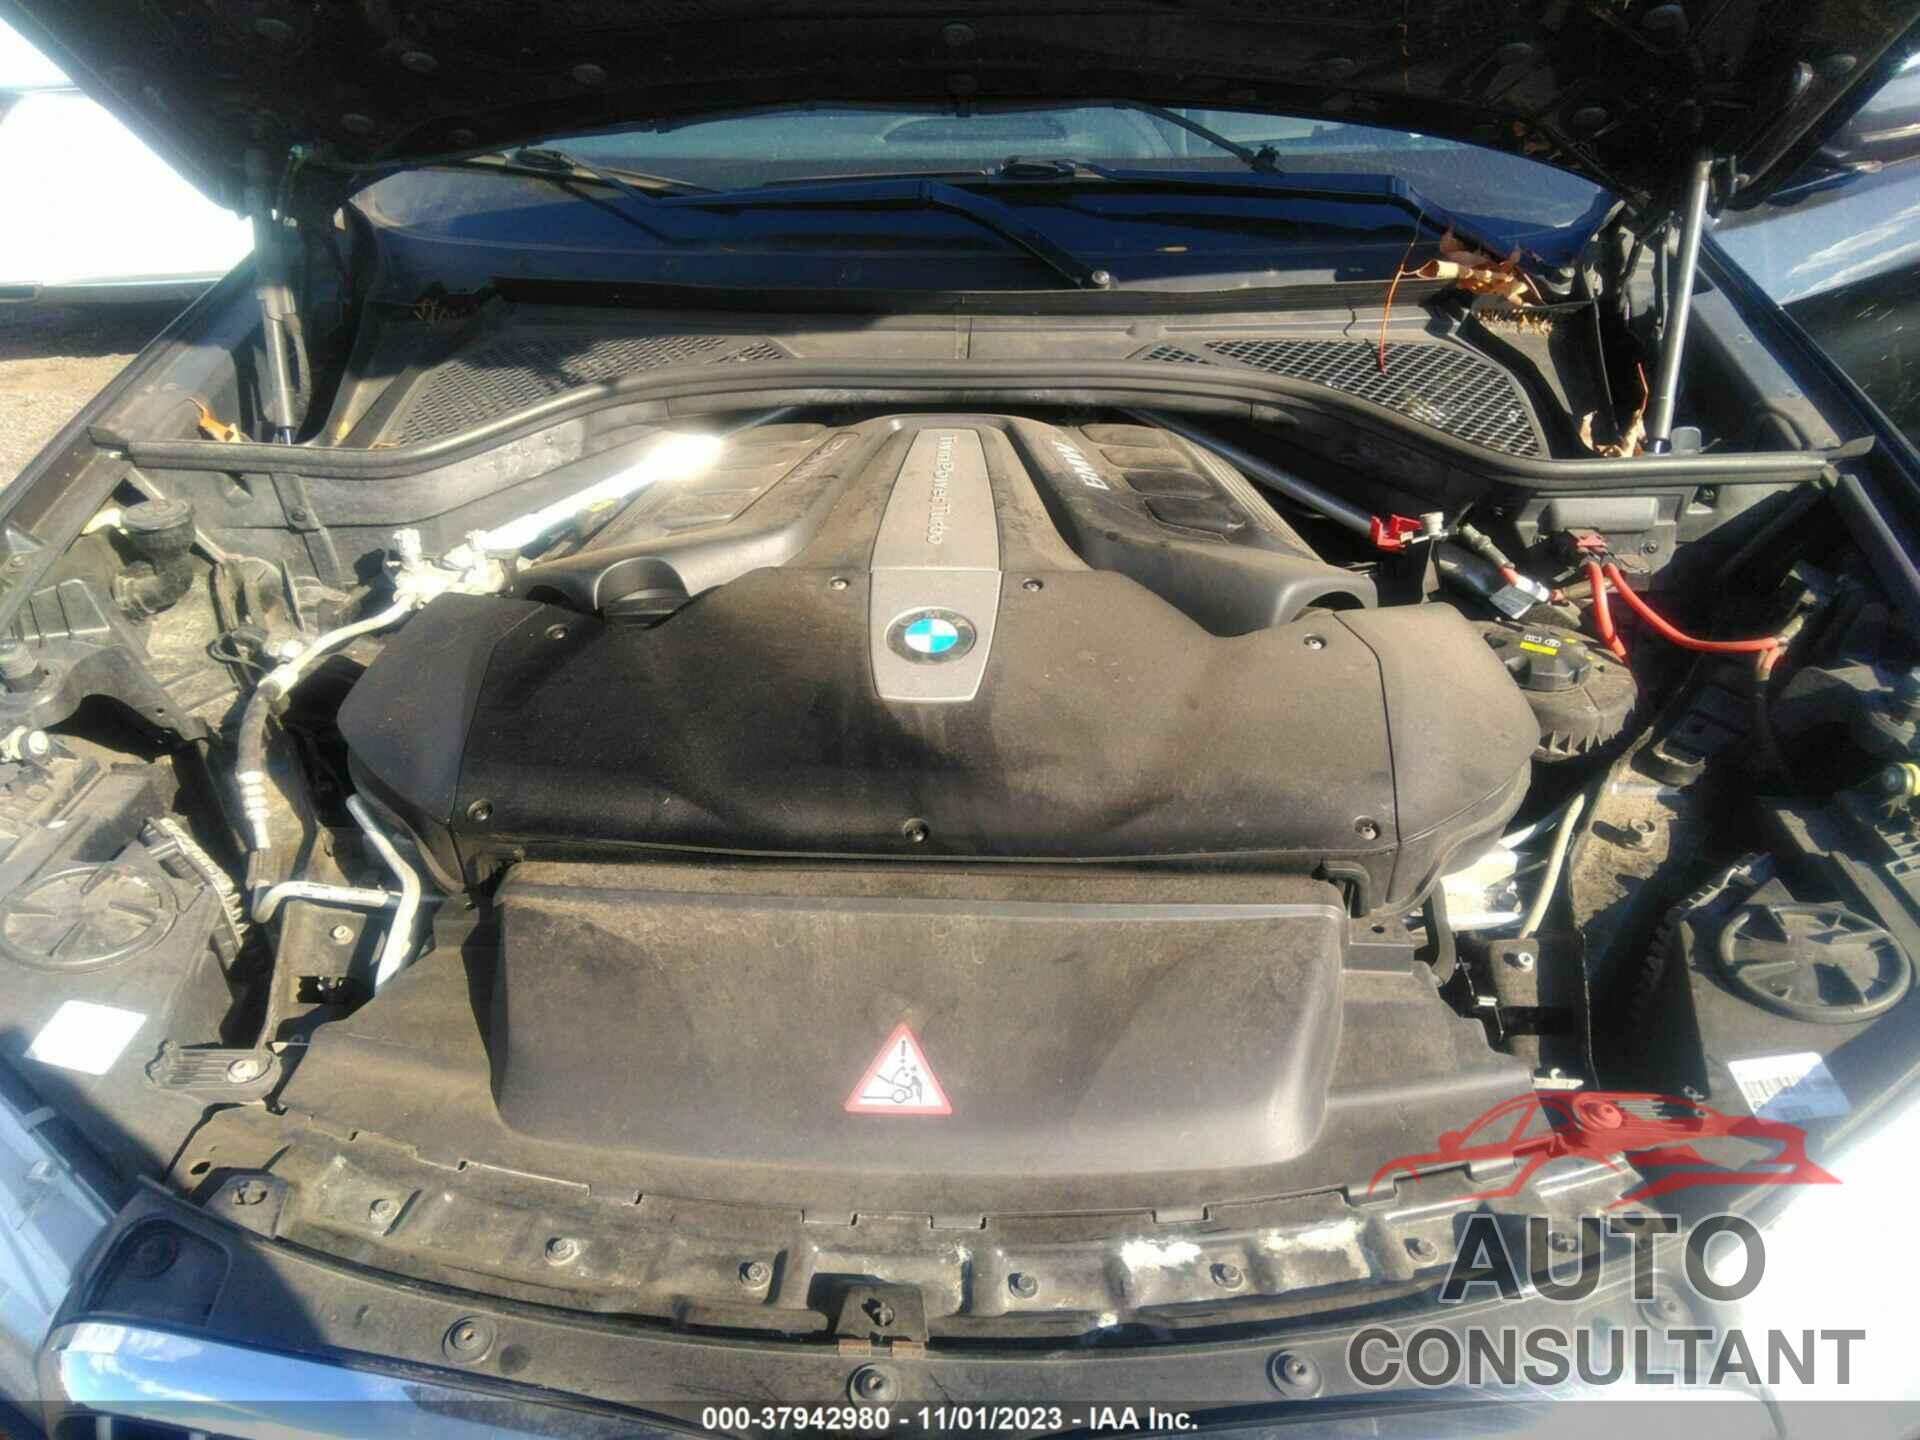 BMW X6 2017 - 5UXKU6C37H0S99793